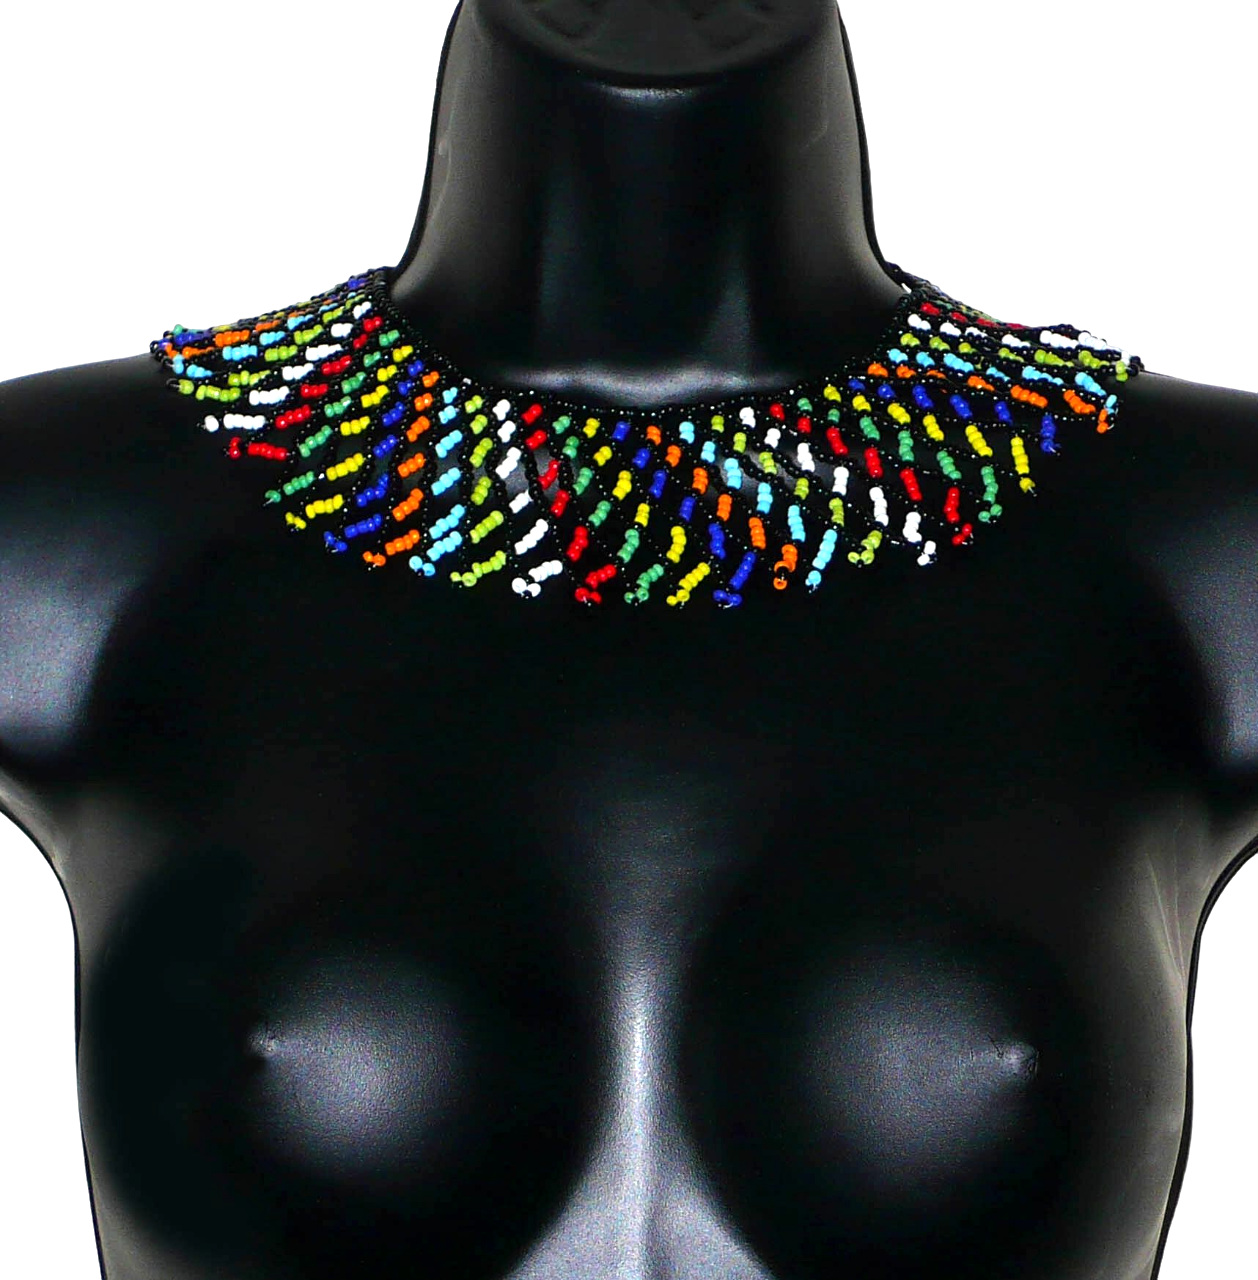 Collier africain zoulou traditionnel composé d'une dentelle de perles de rocaille noires et multicolores entrelacées. Le collier s'attache avec un fermoir à boule. Il mesure 18 cm de long en partant de la nuque jusqu'au bas du collier, la longueur de la chaîne autour du cou est de 44 cm et sa largeur de 5,5 cm.